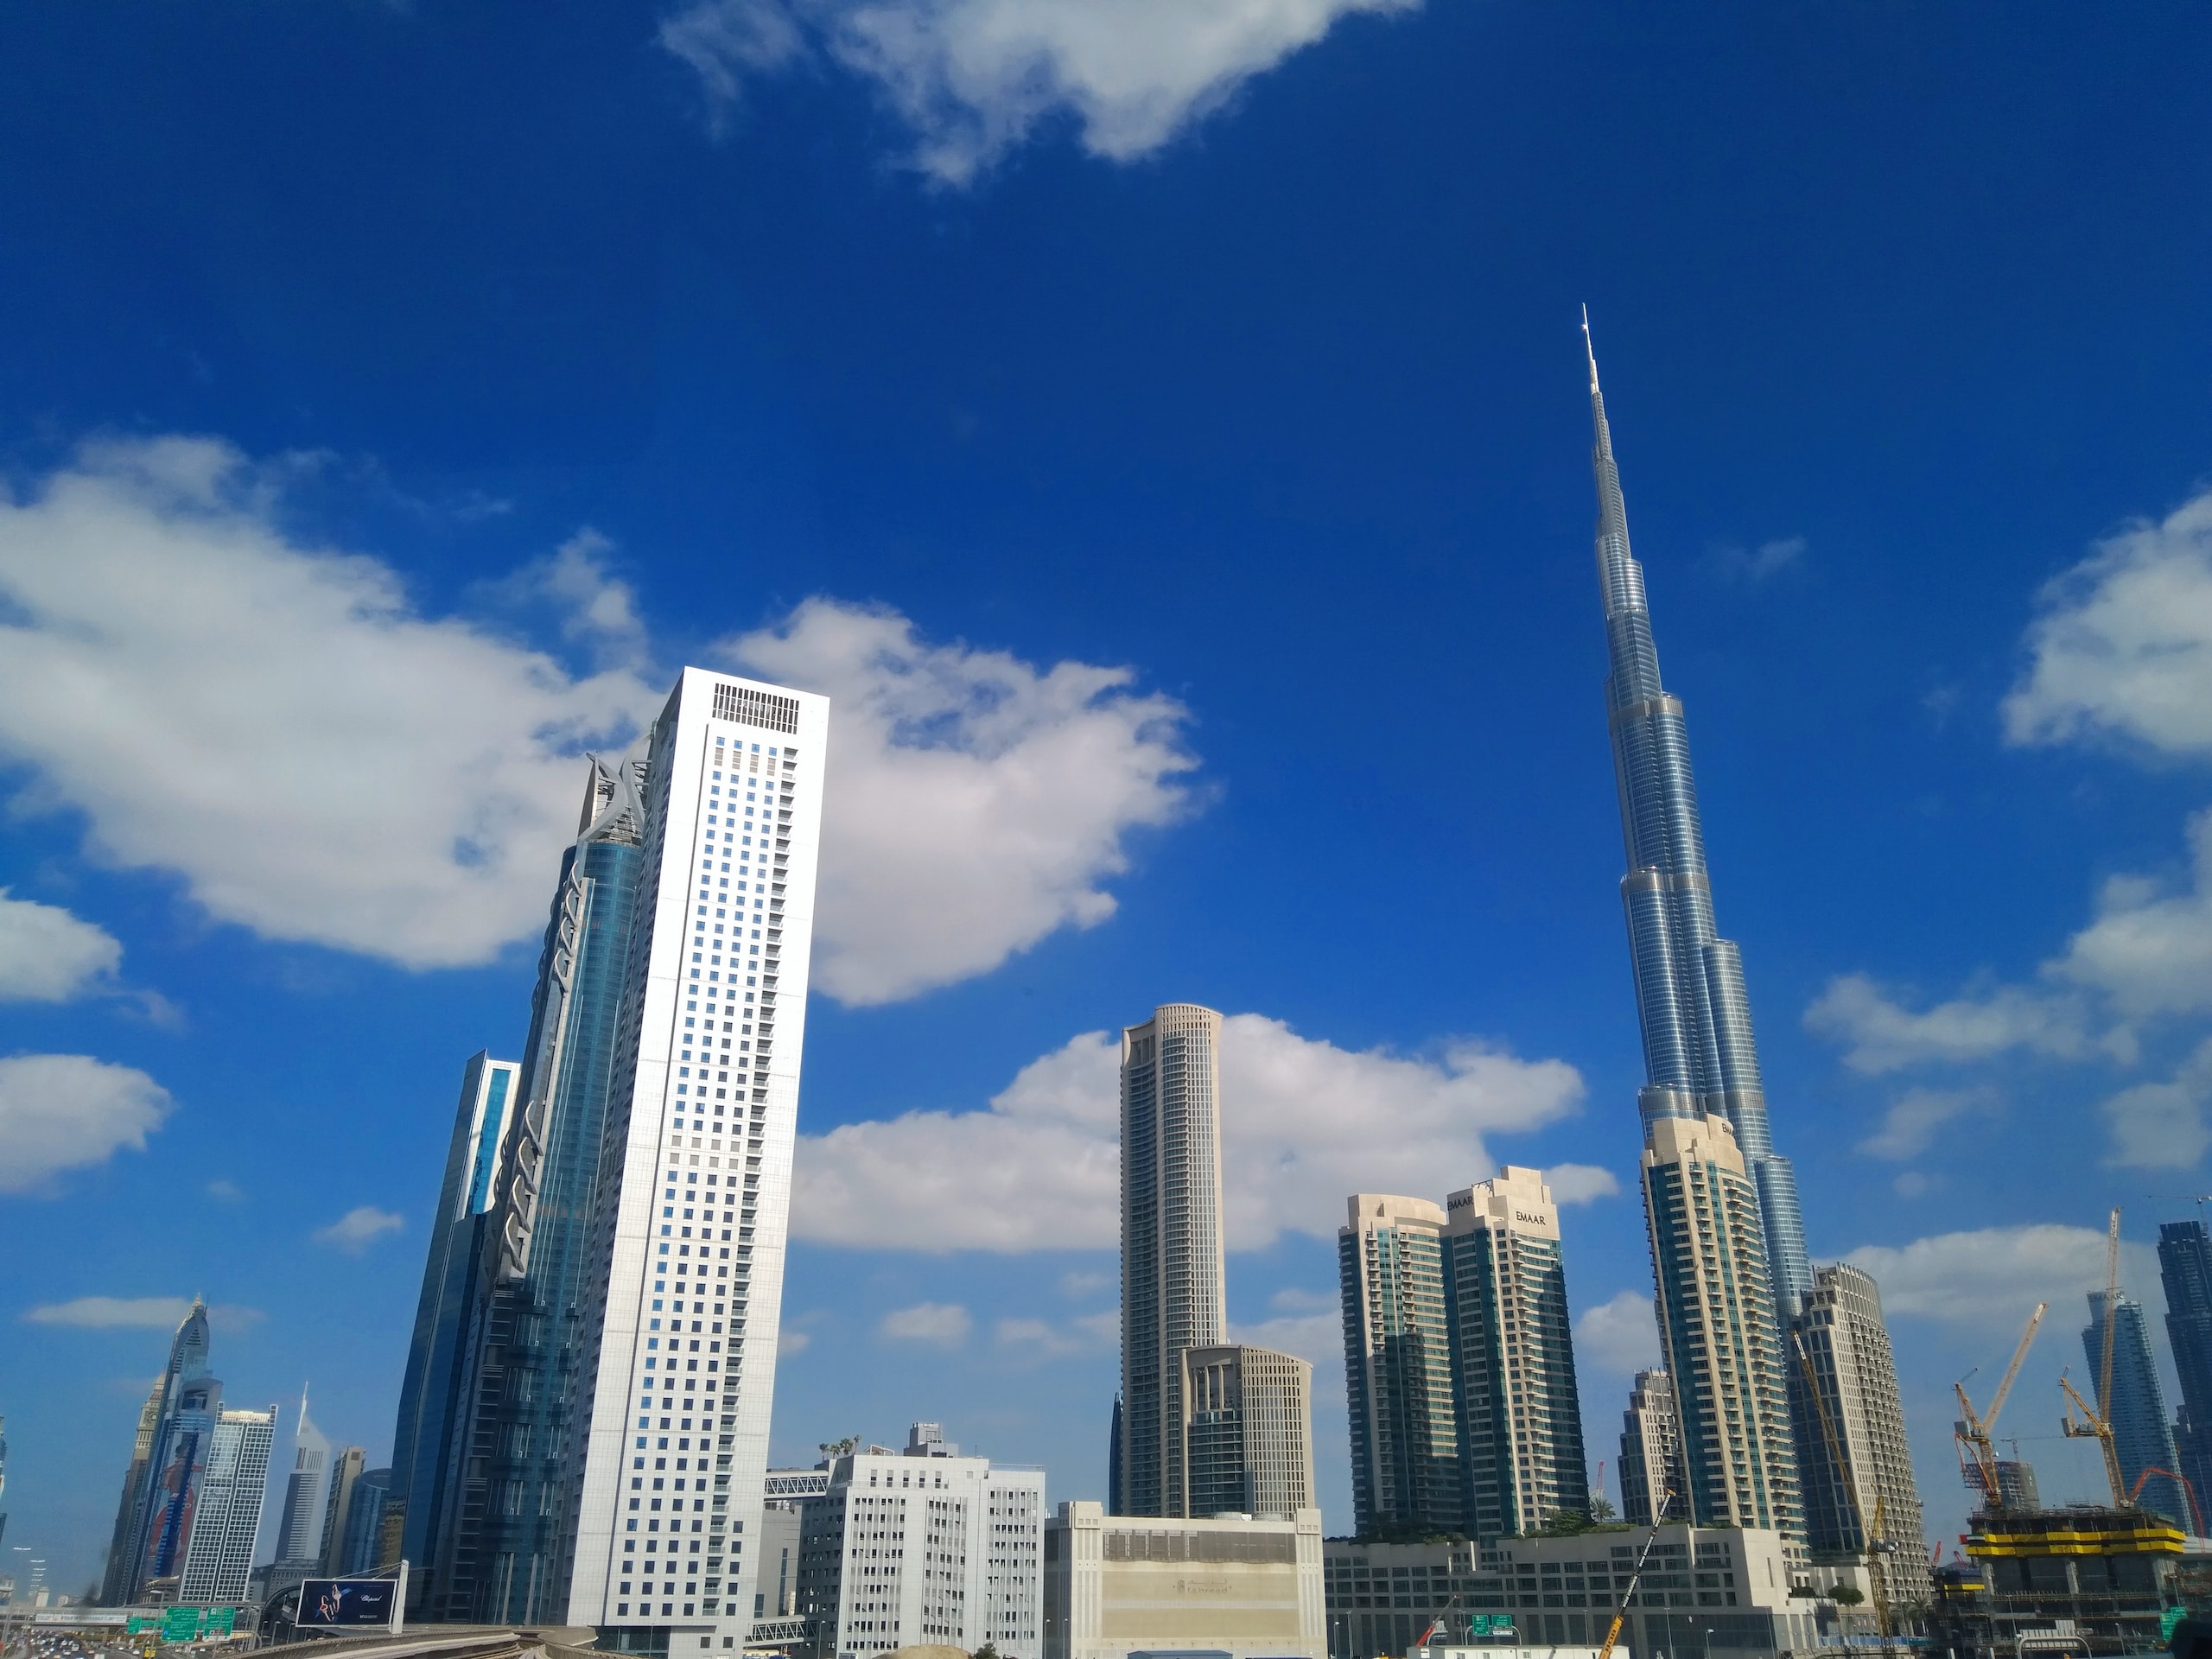 How do you describe Dubai in few words?